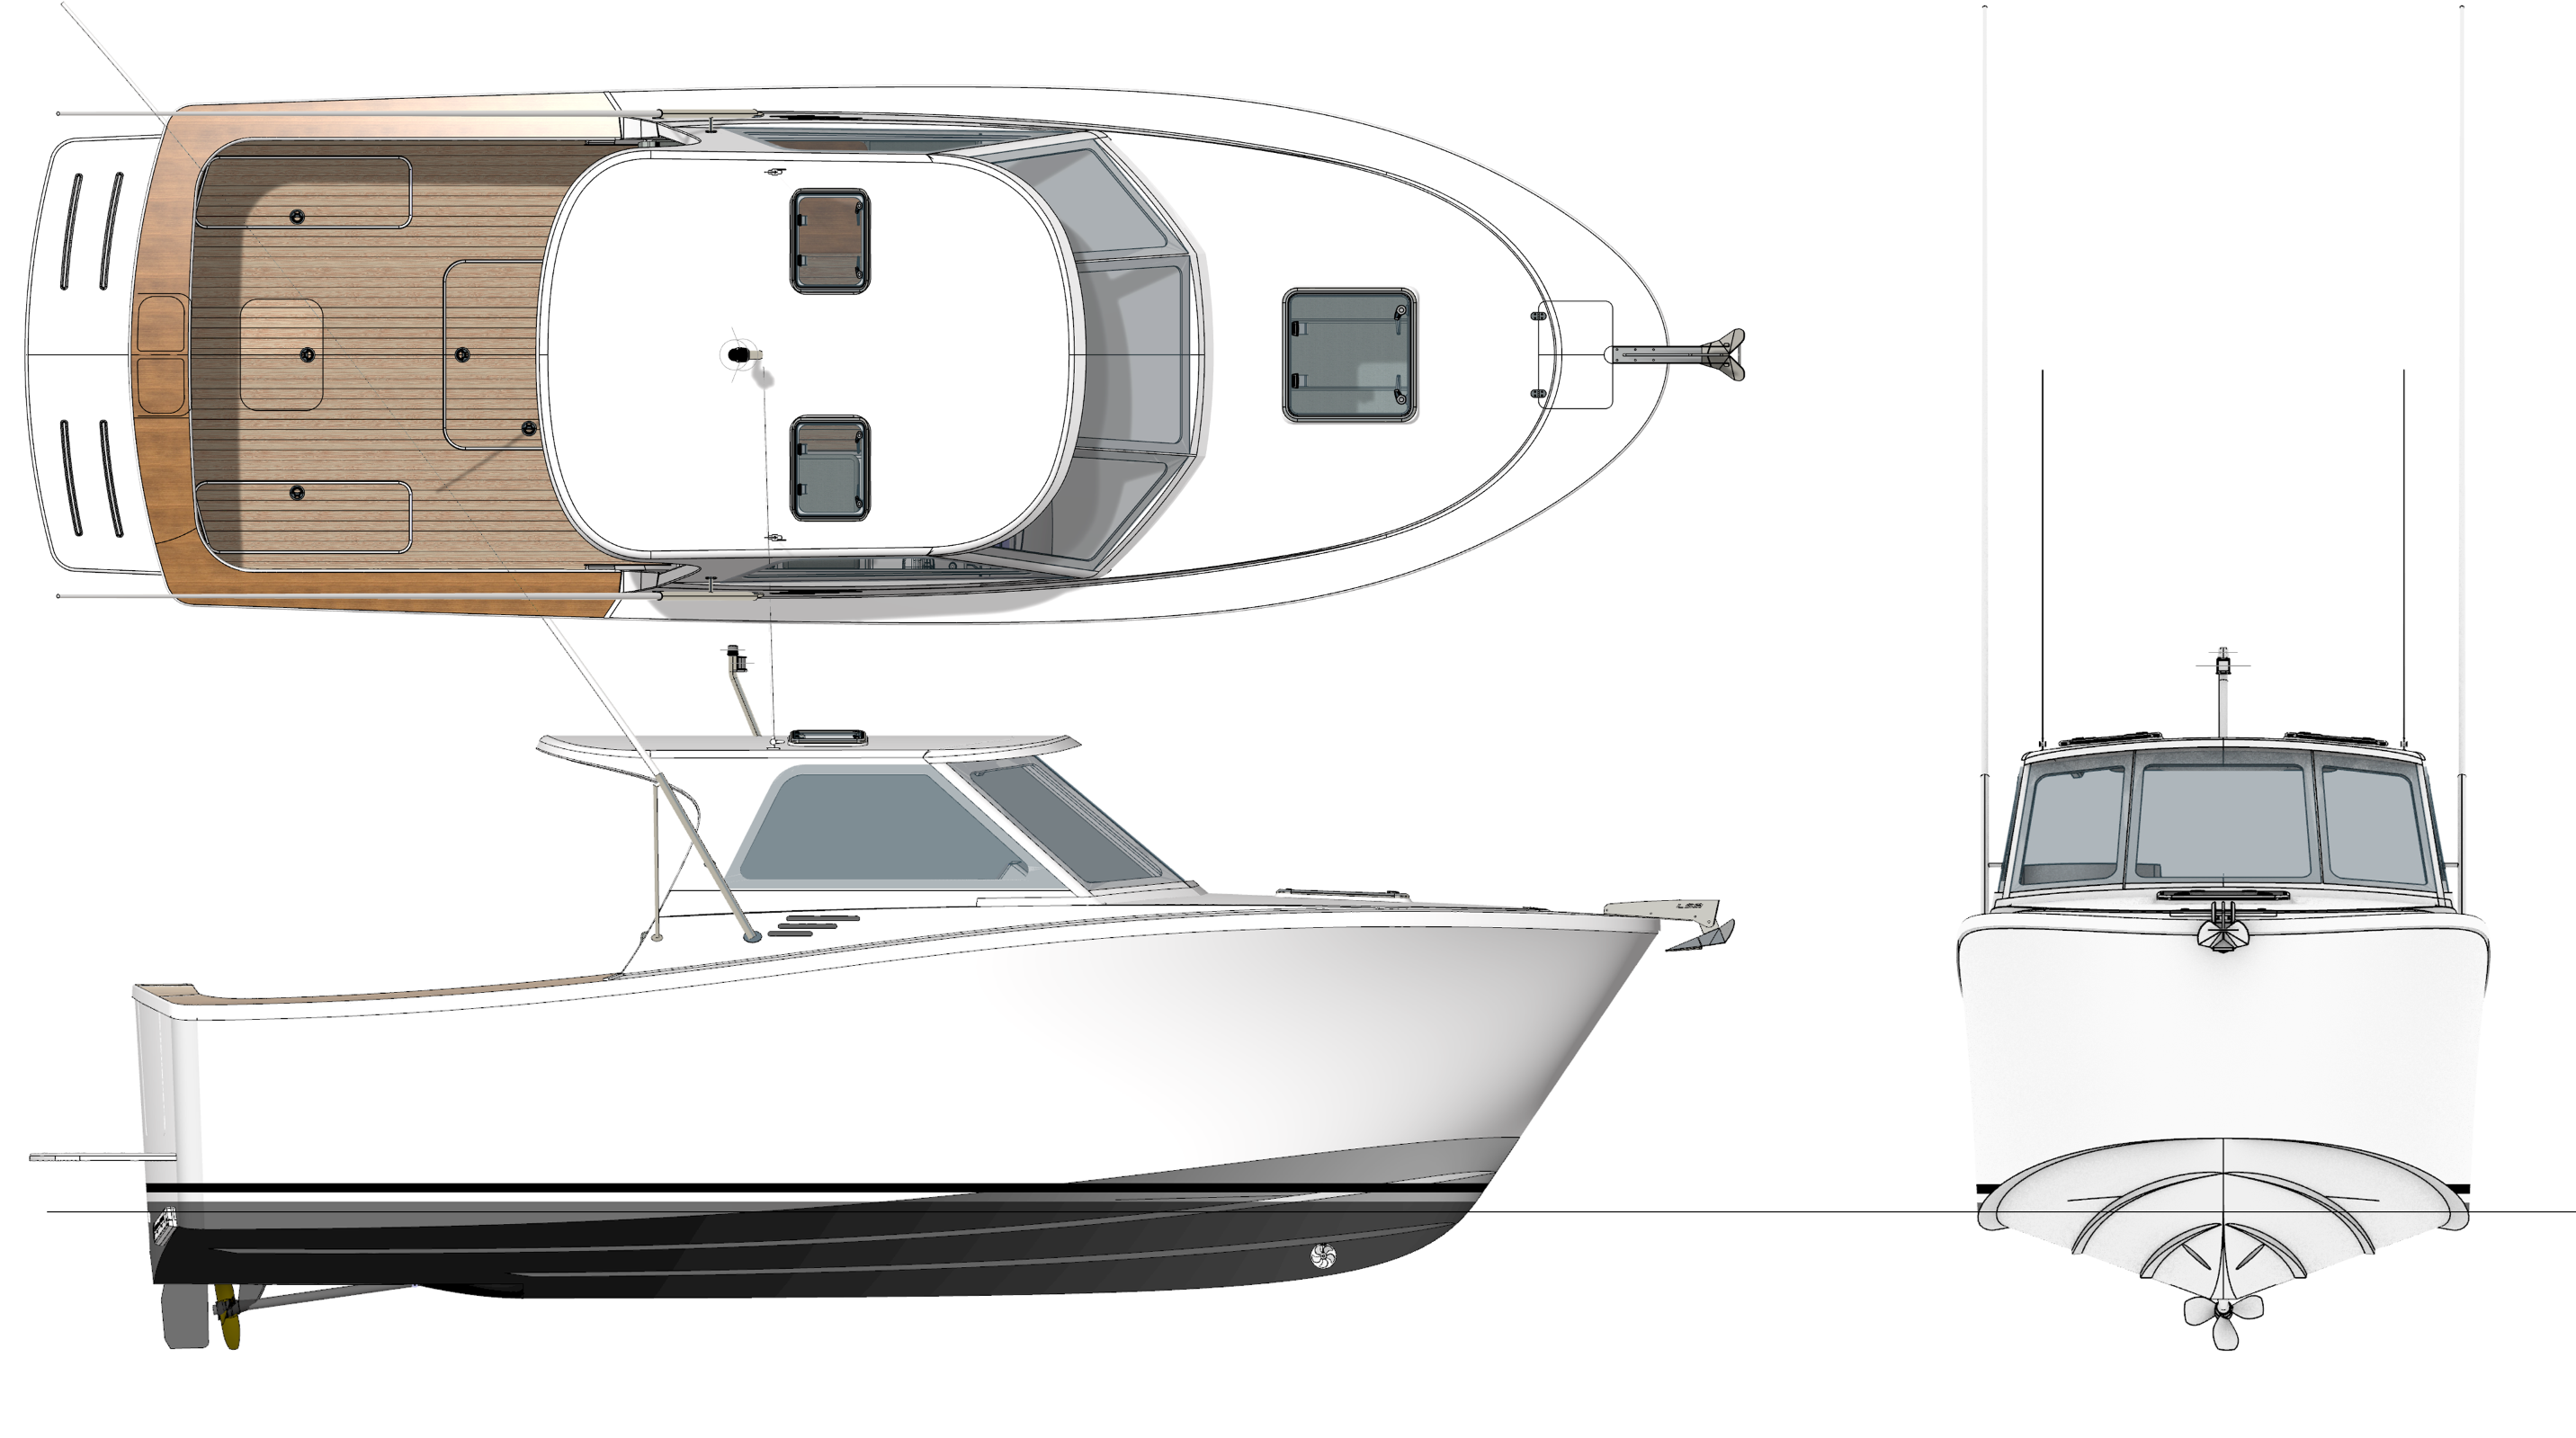 design-087-tasman-8m-sports-fishing-boat-bury-design